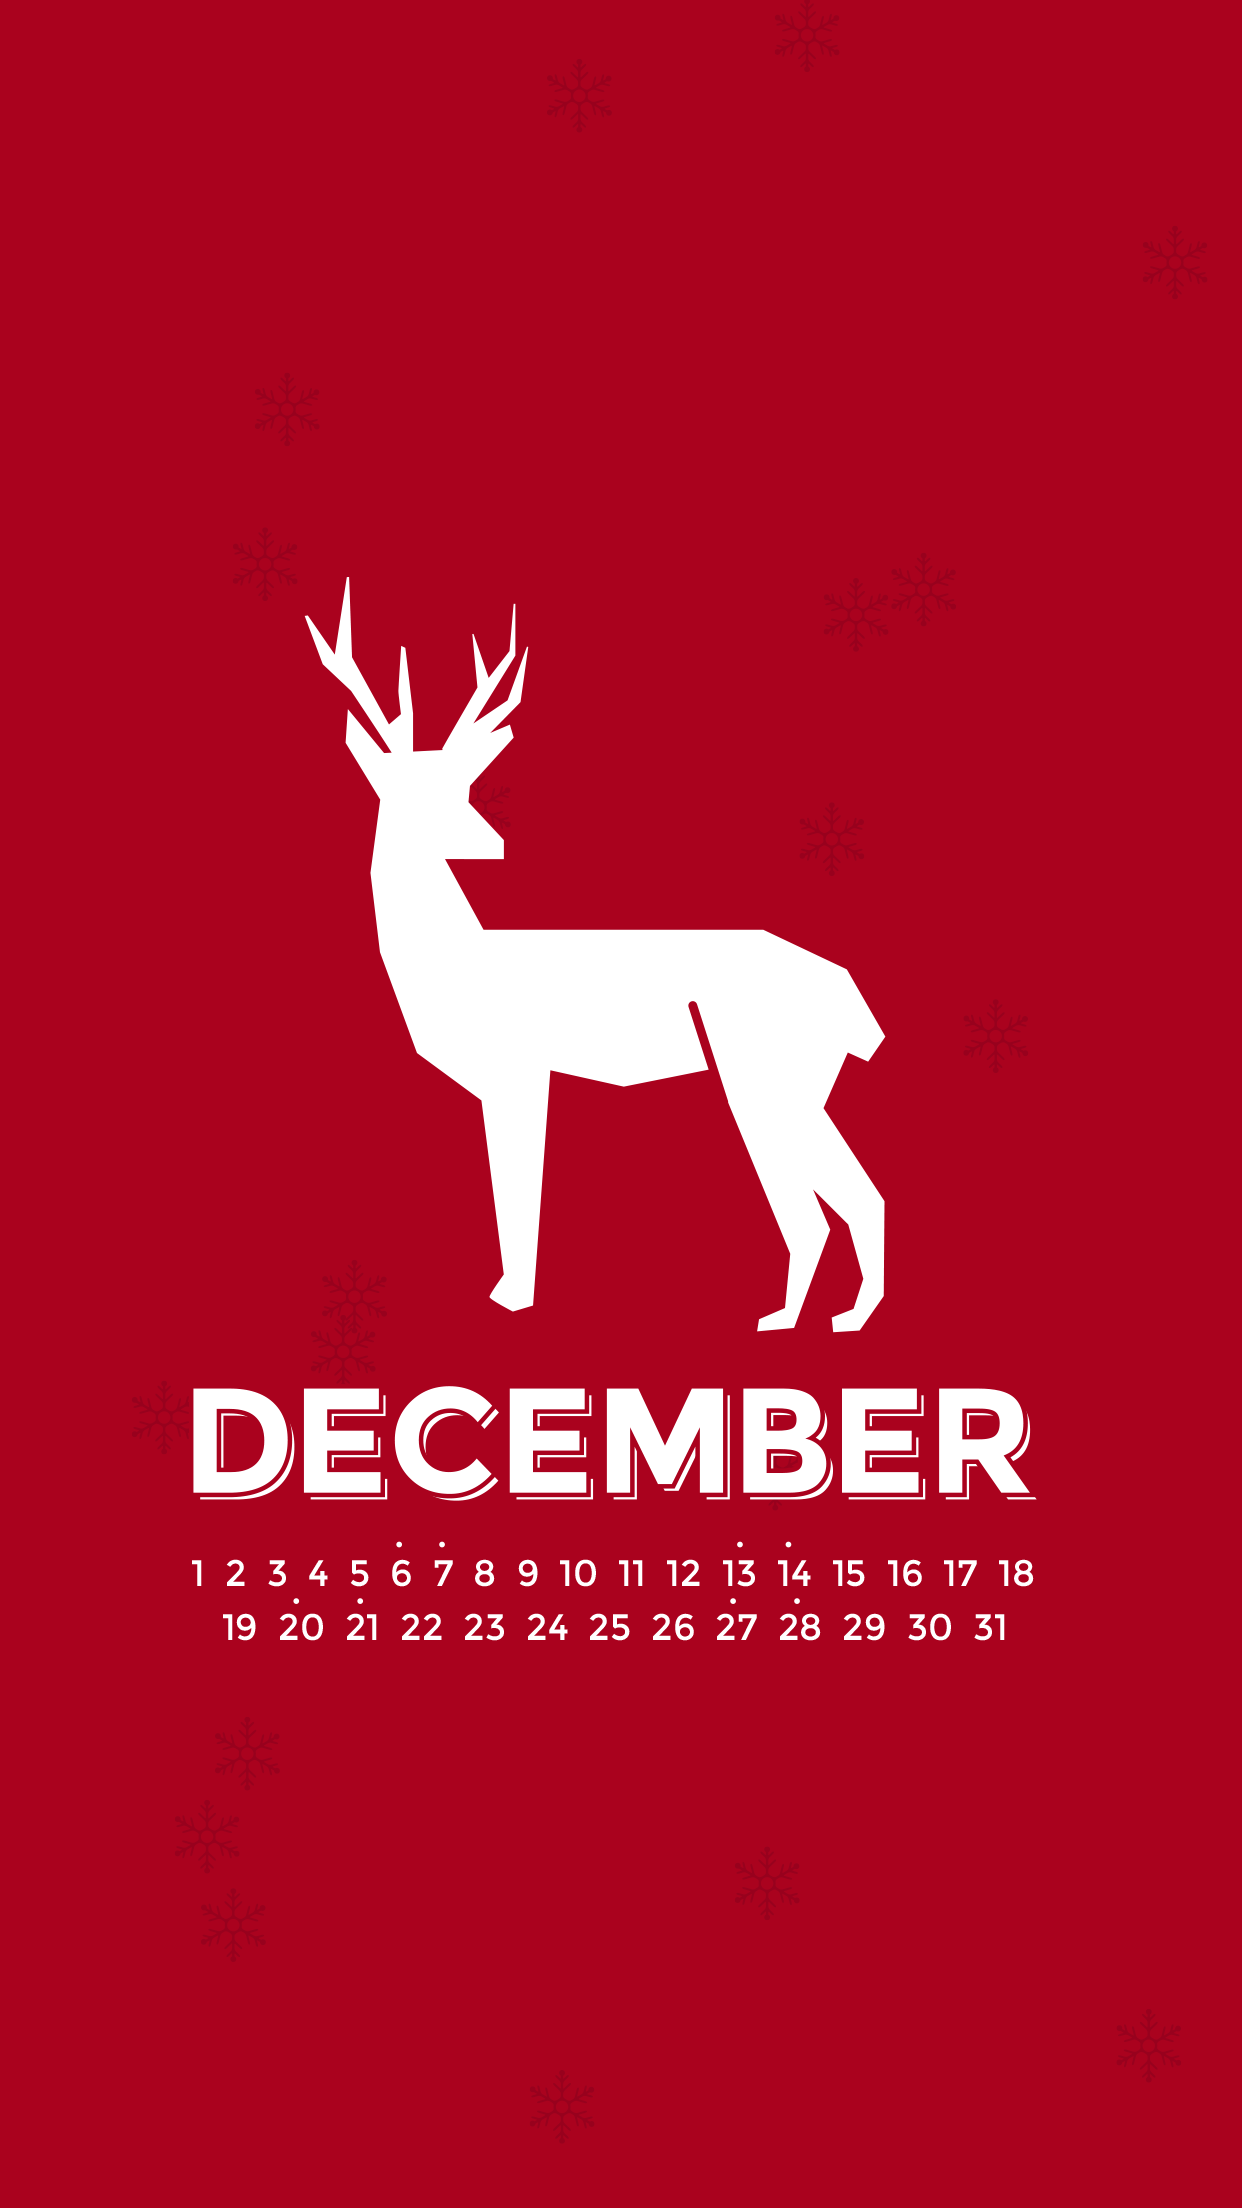 December 2014 Desktop Calendar Wallpaper